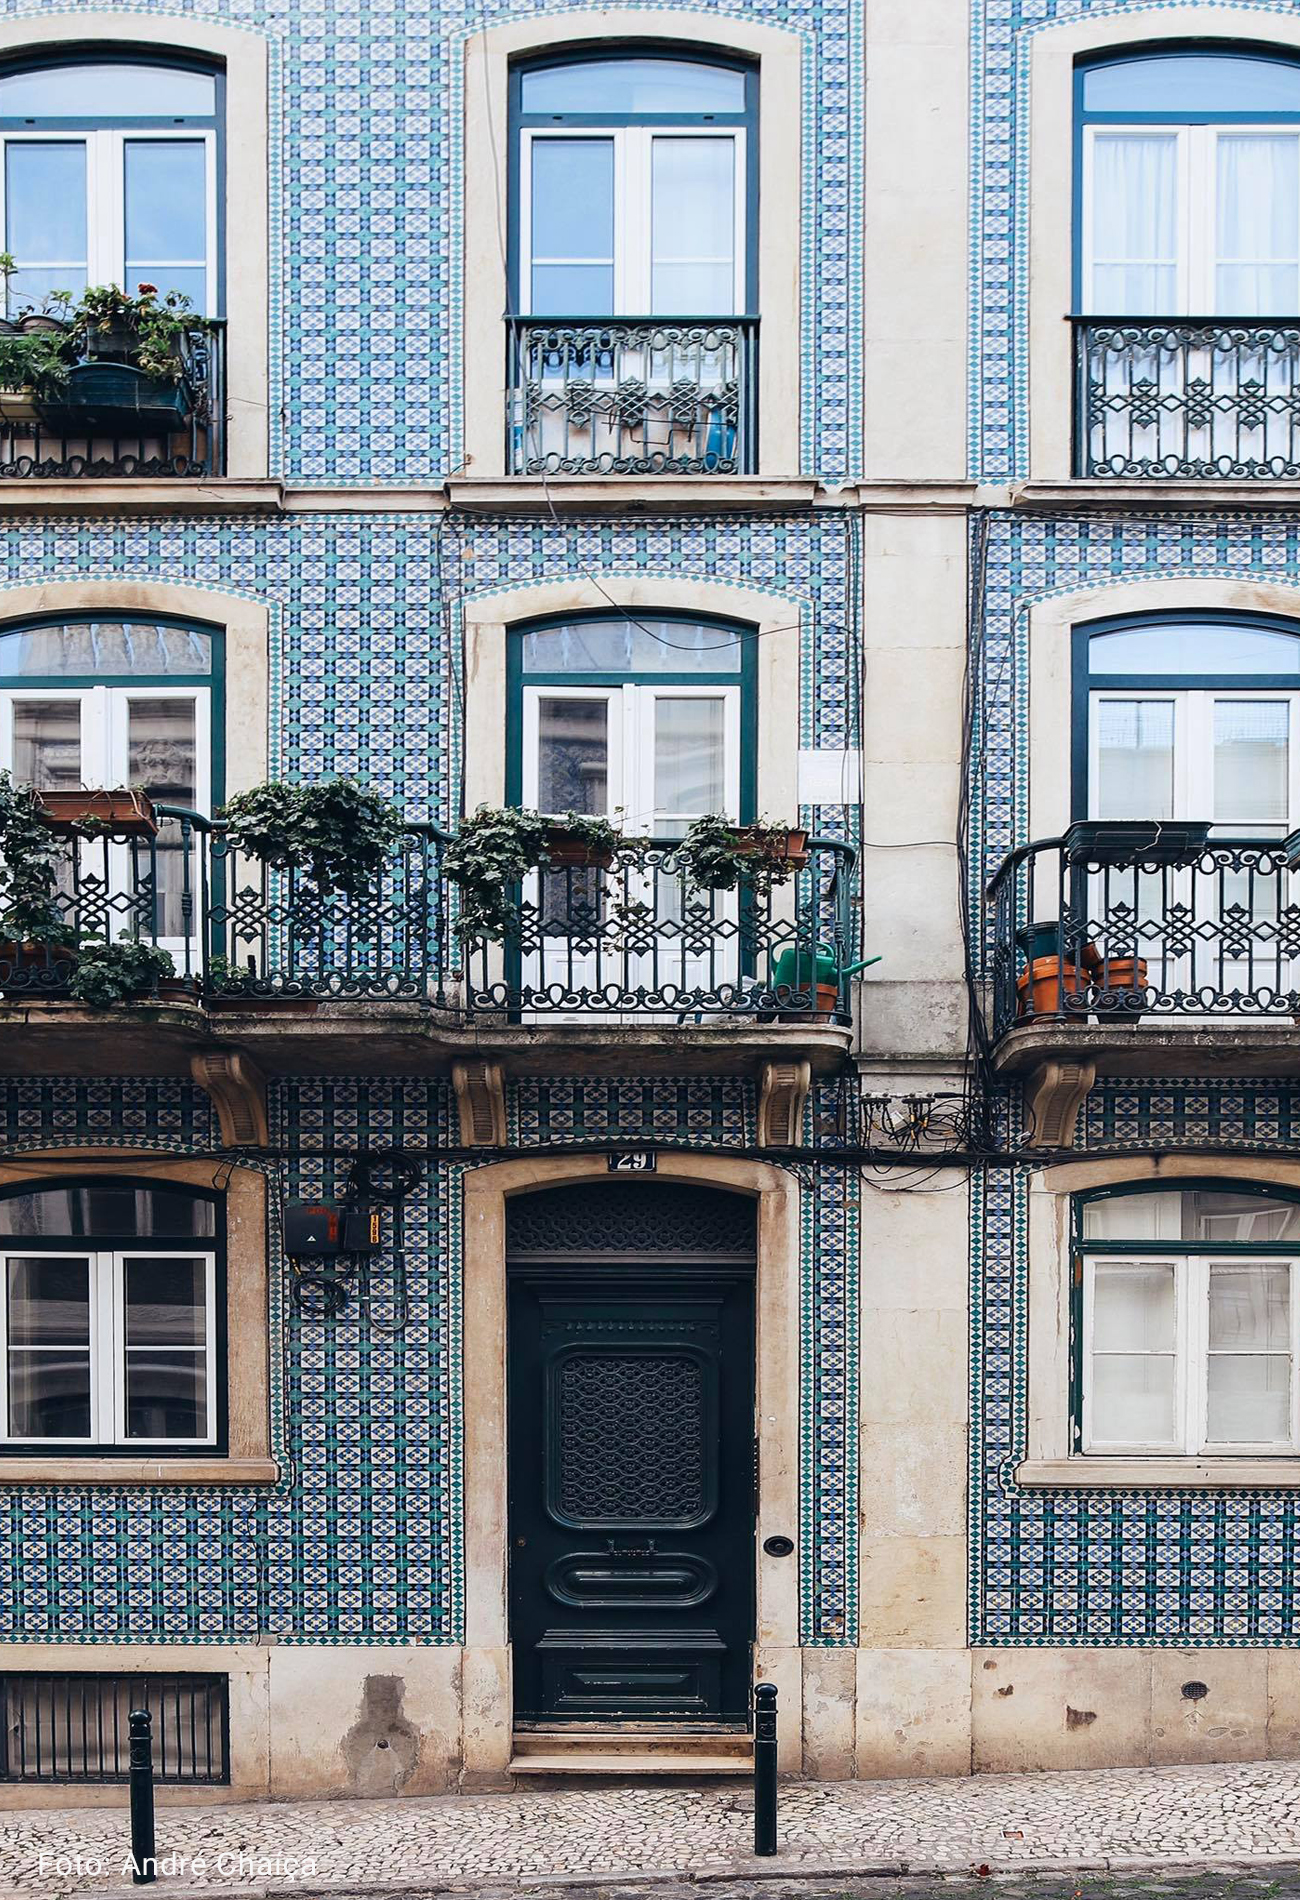 Fachada de prédio antigo em Portugal